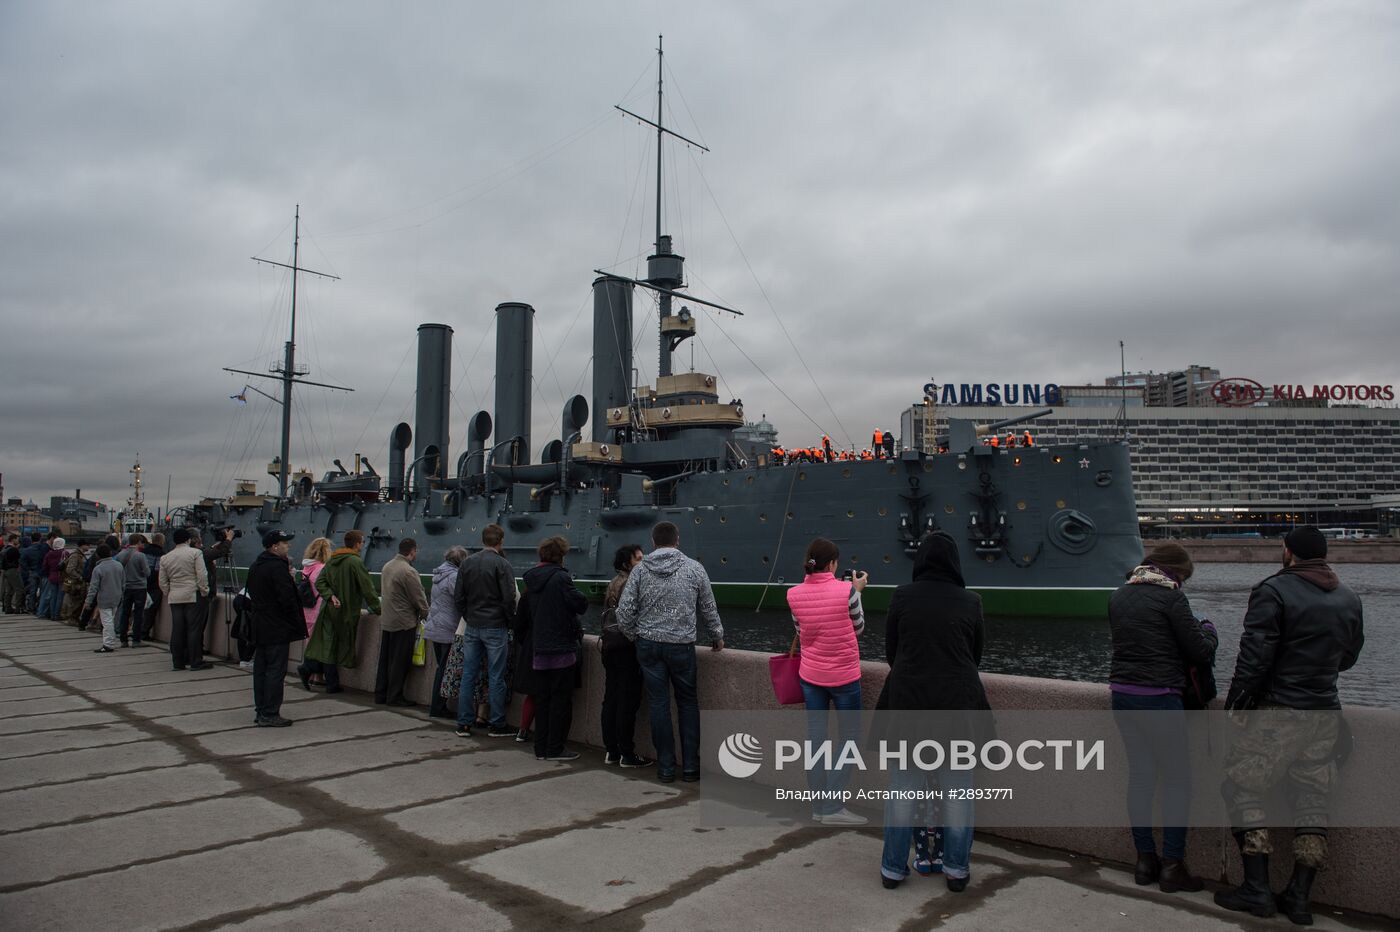 Буксировка крейсера "Аврора" к месту постоянной стоянки у Петроградской набережной